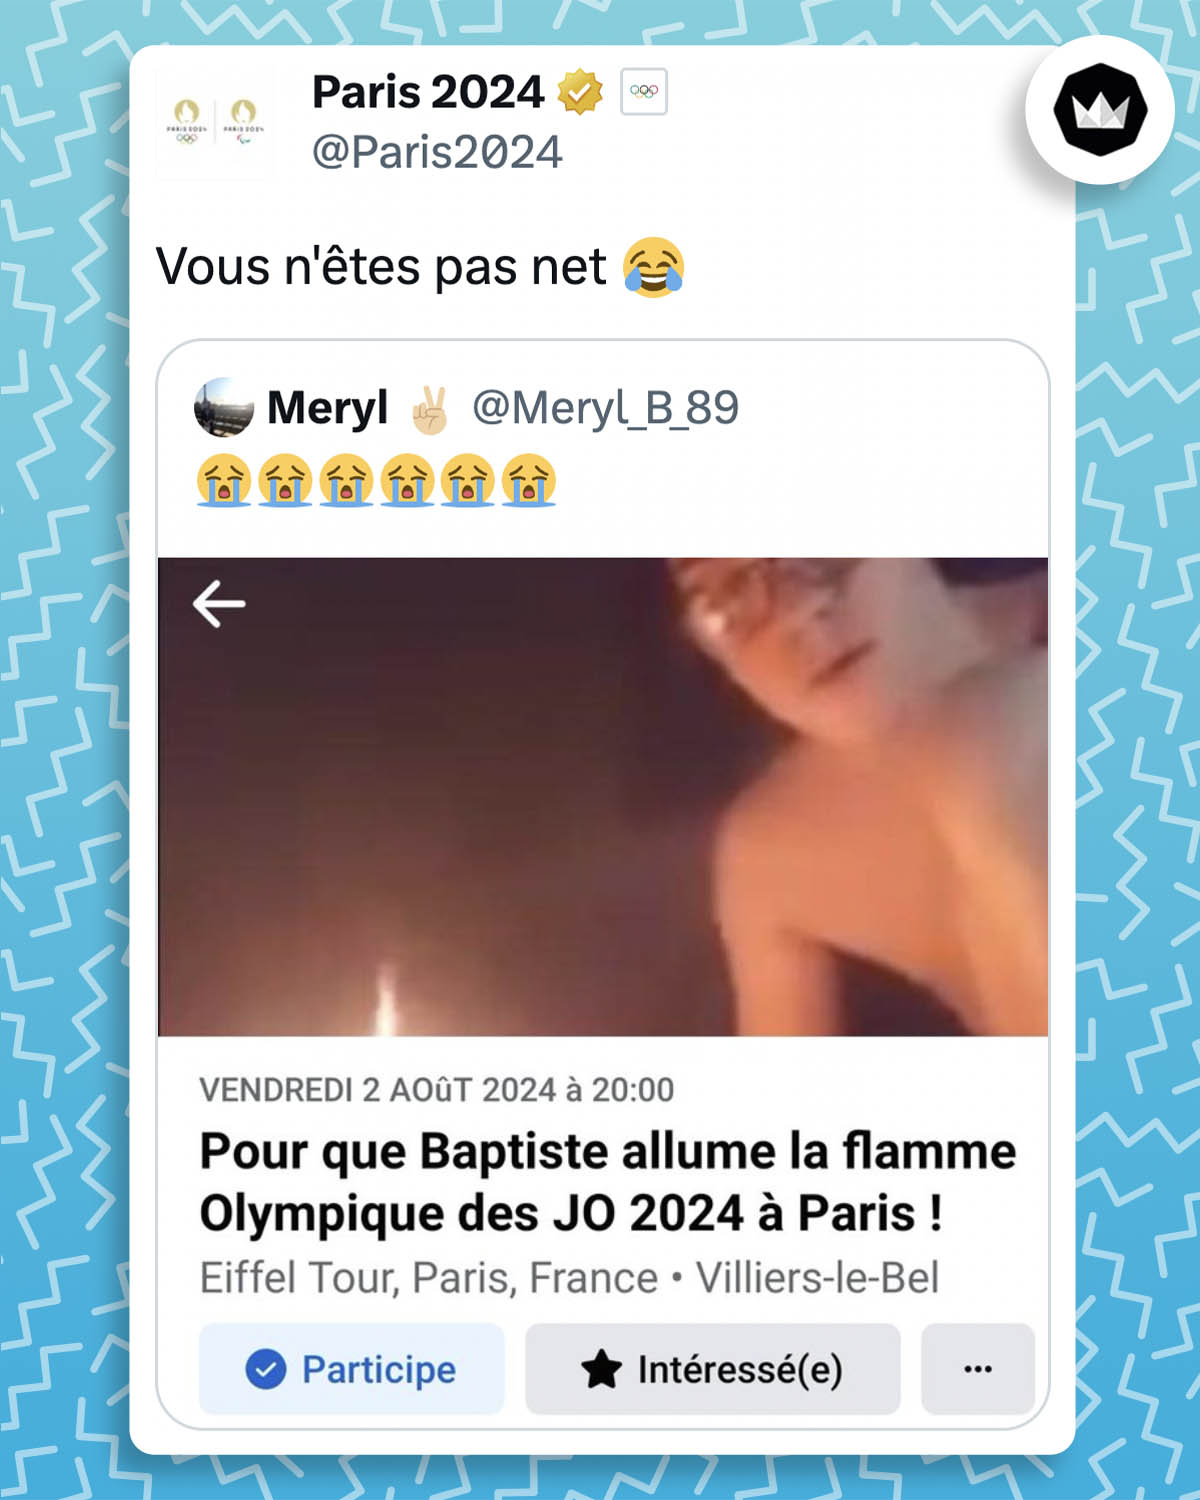 Paris 2024 répond à un screen d'un événement Facebook "Pour que Baptiste allume la flamme Olympique des JO en 2024 à Paris !" :
"Vous n'êtes pas nets" avec un emoji qui pleure de rire
